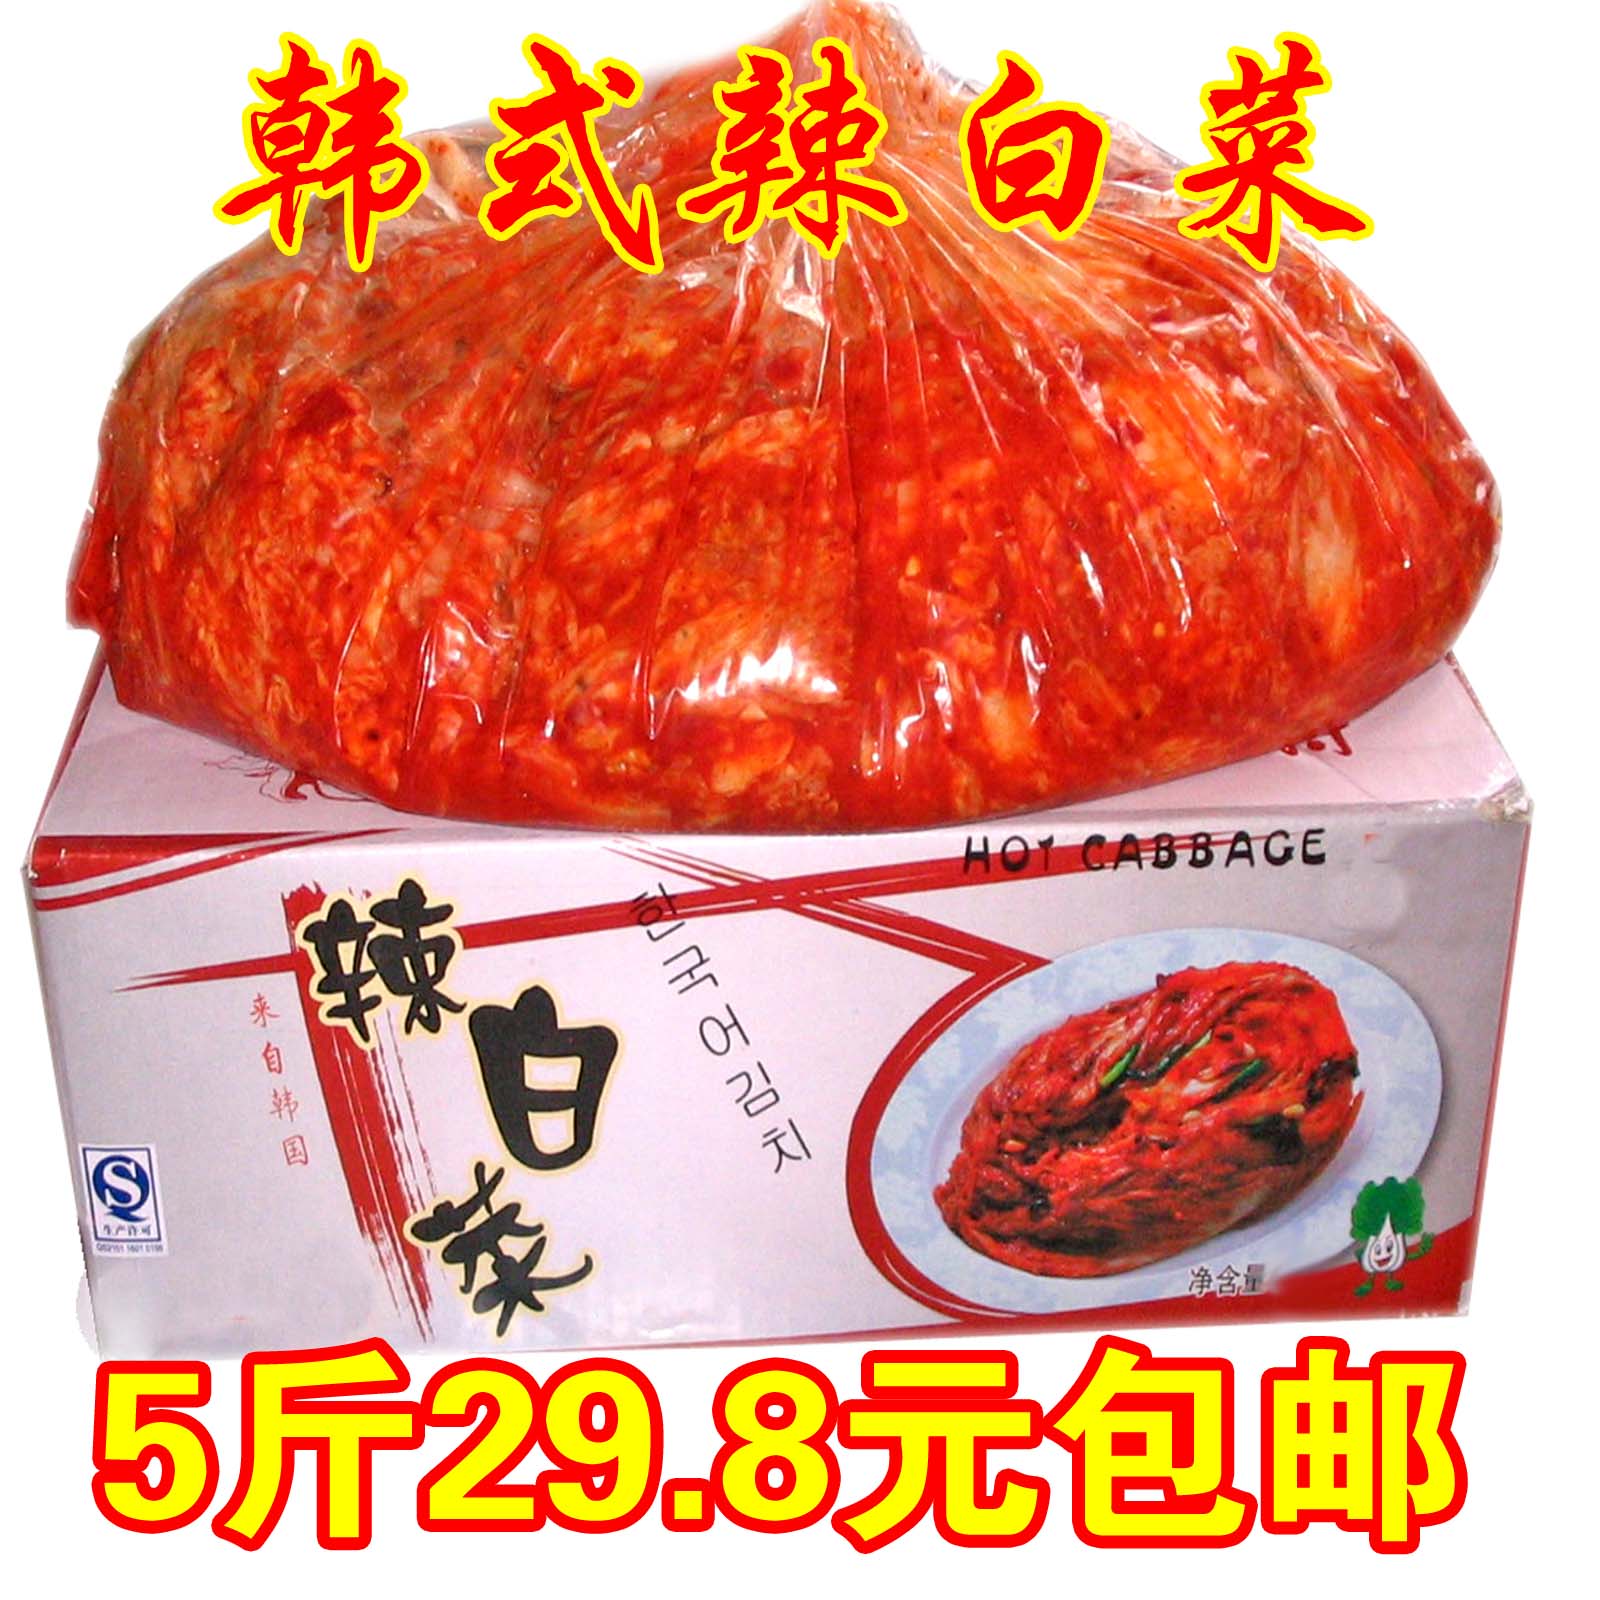 5斤29.5元泡菜辣白菜东北泡菜棵状辣白菜下饭菜优惠